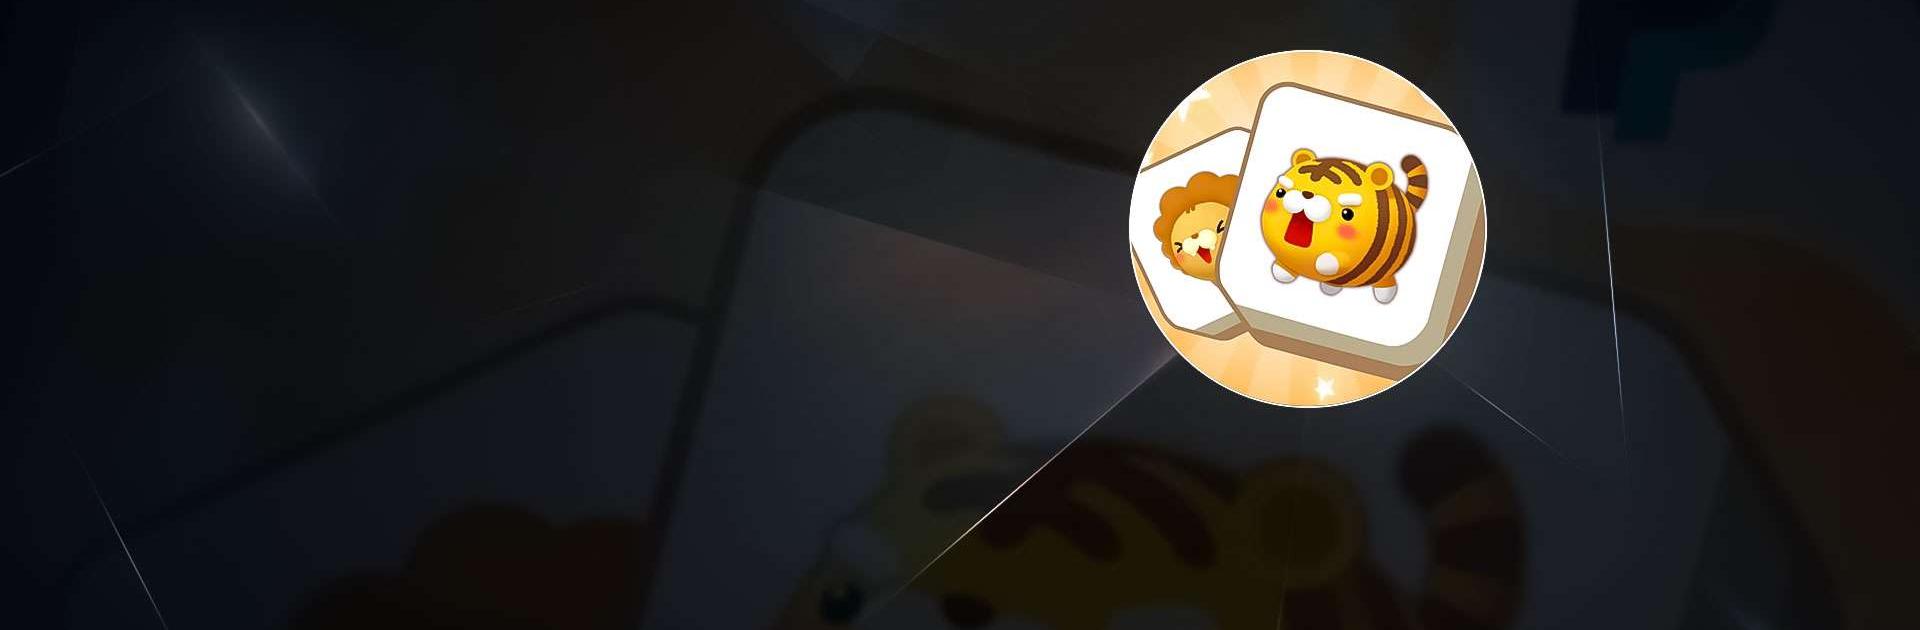 Como BAIXAR jogos e apps modificados pelo Panda Helper Android 